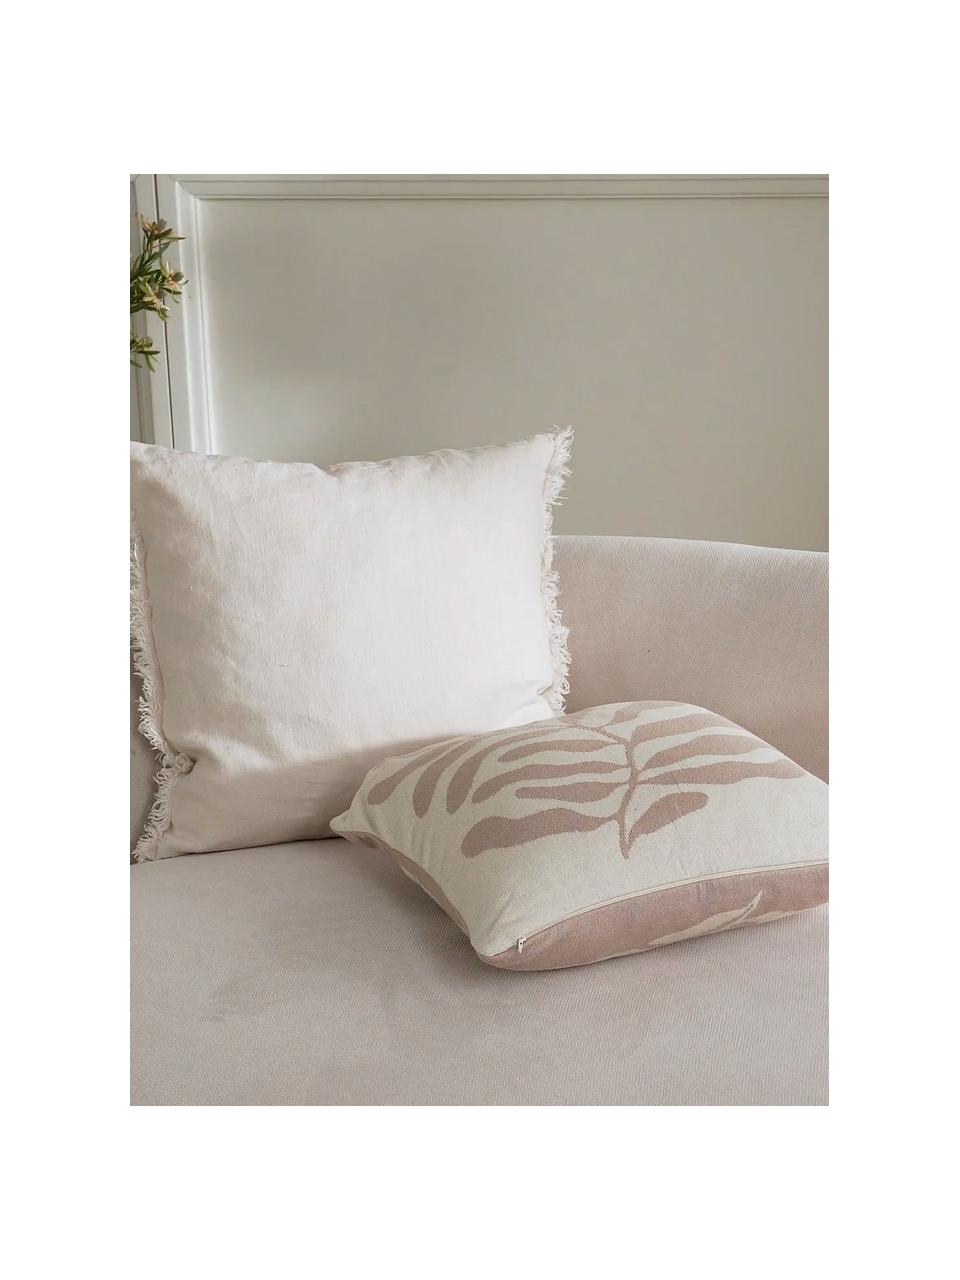 Dwustronna poszewka na poduszkę z bawełny organicznej Émile, 100% bawełna organiczna z certyfikatem GOTS, Beżowy, kremowobiały, S 45 x D 45 cm